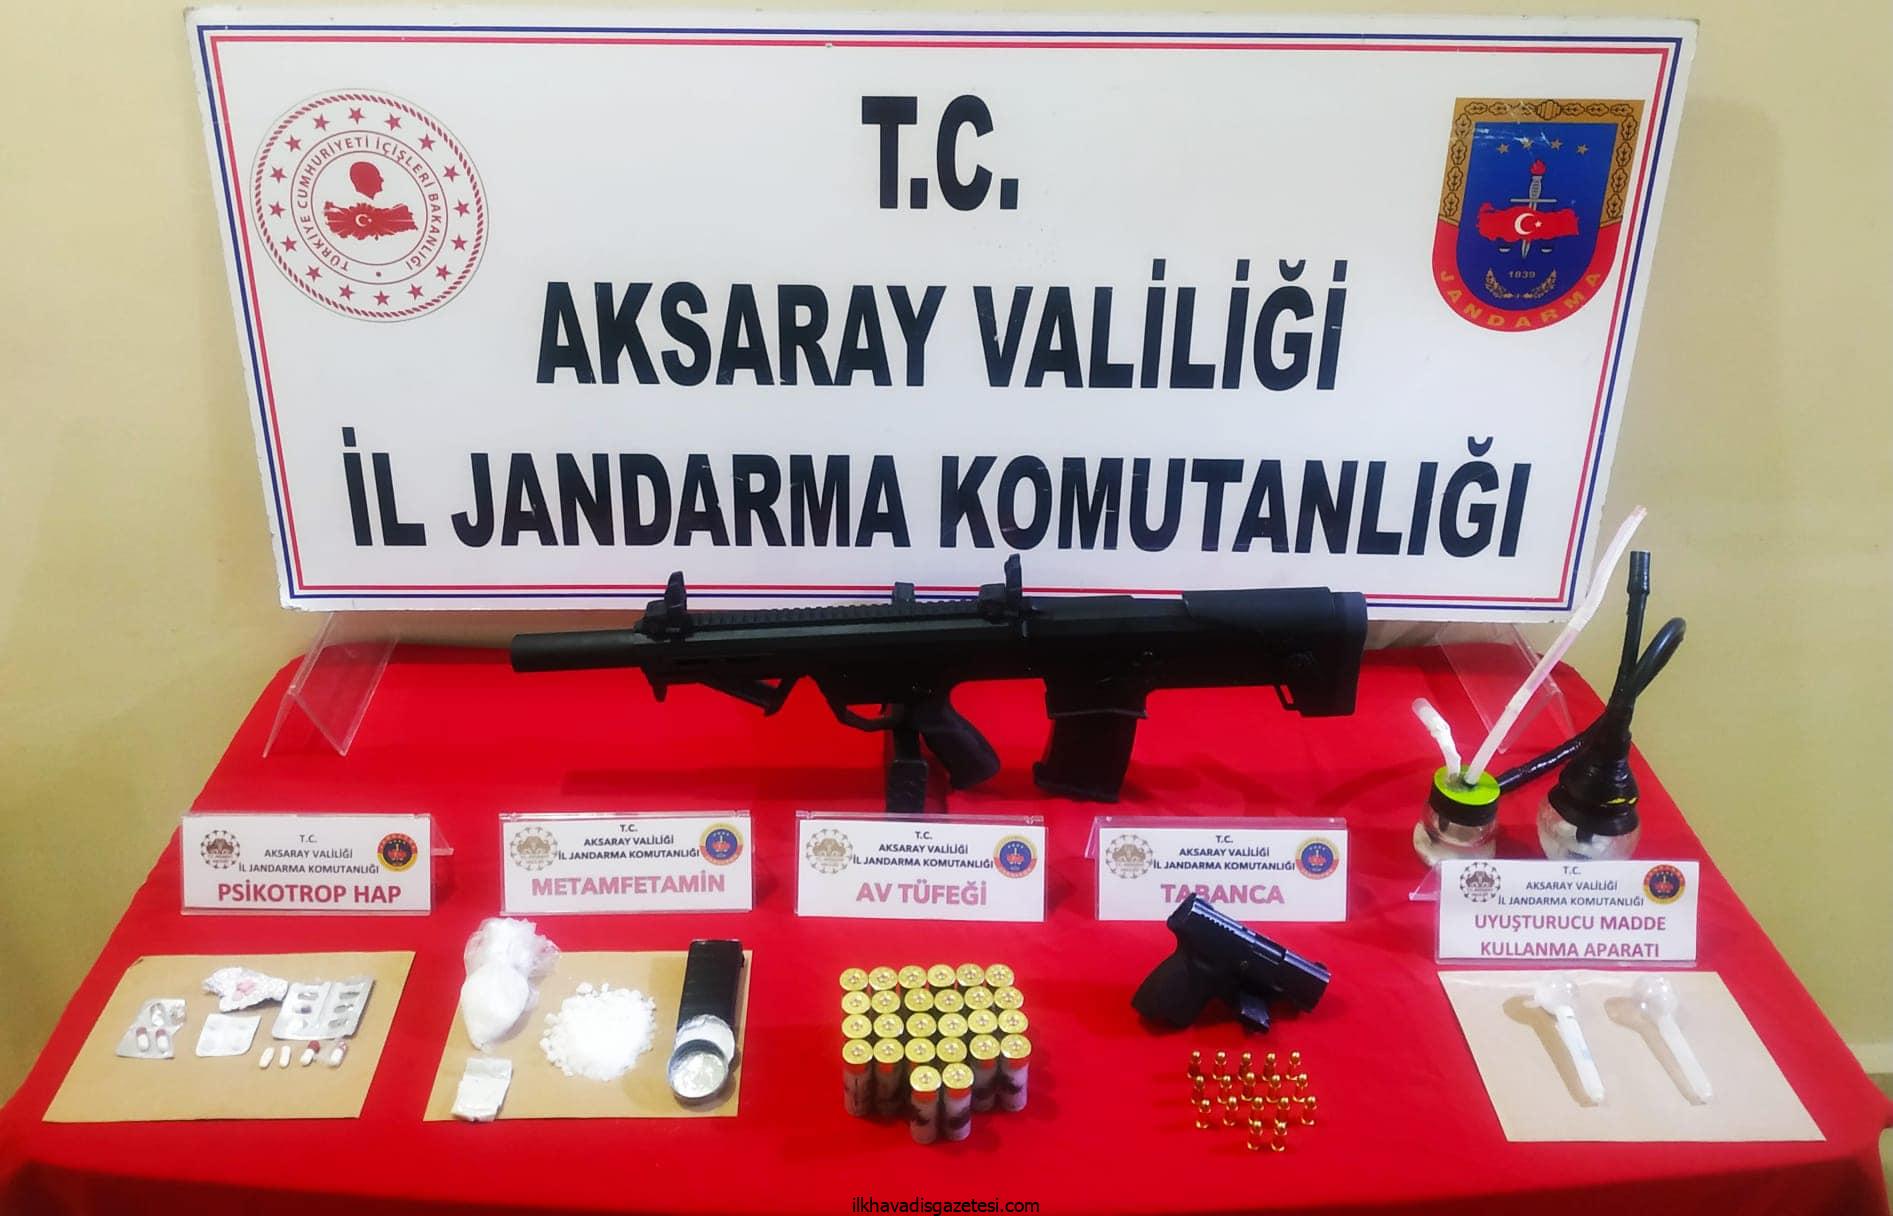 Aksaray’da Jandarma silah ve uyuşturucu yakaladı